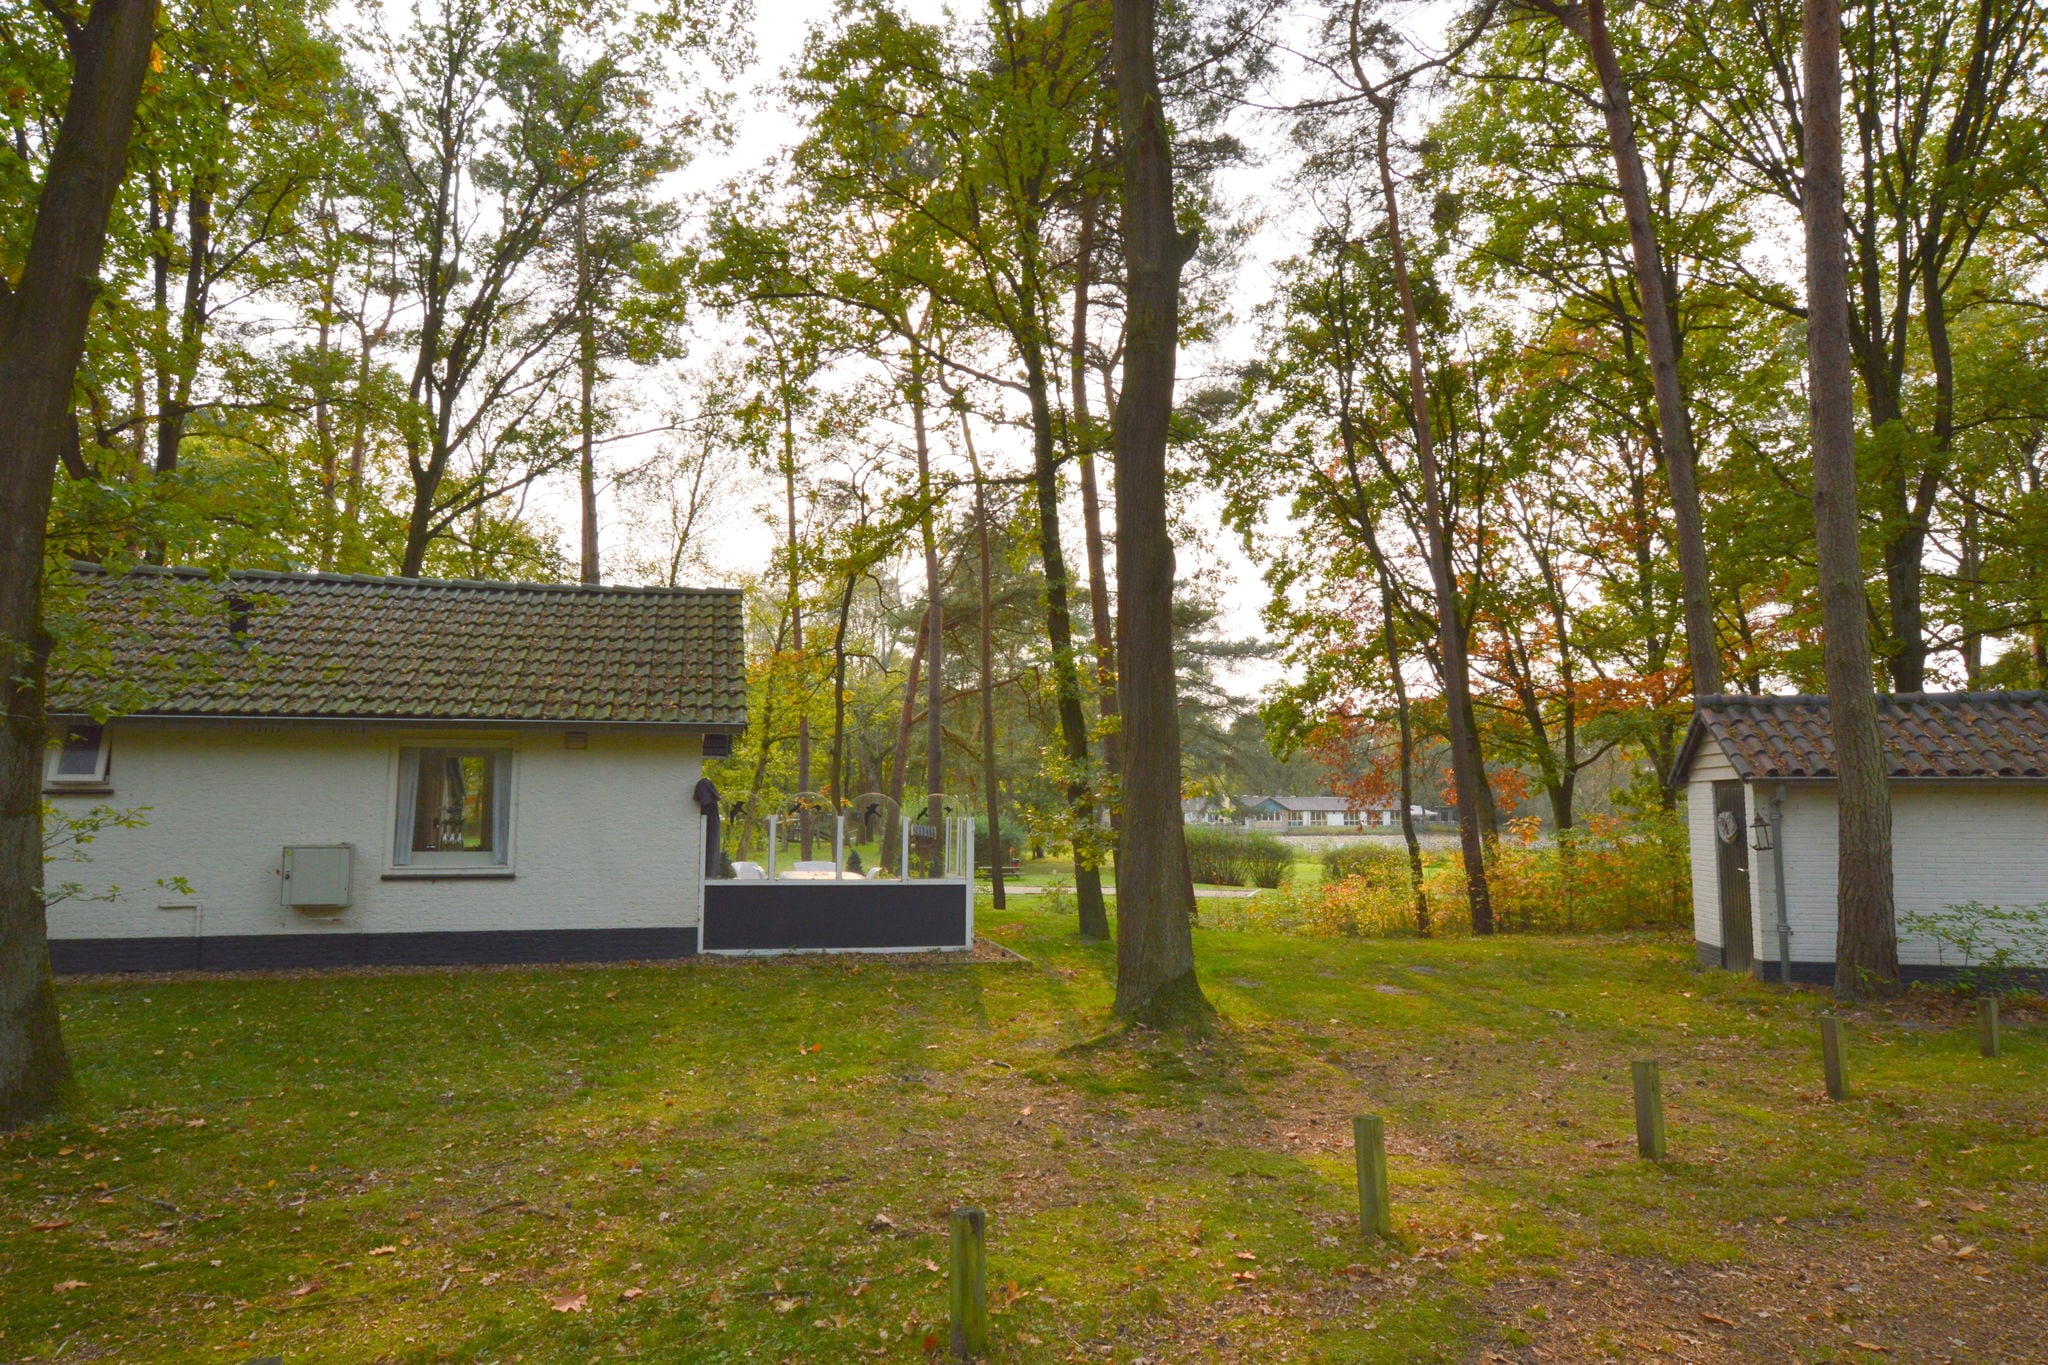 Abgeschiedene Ferienwohnung in Limburg, in dichtem Wald